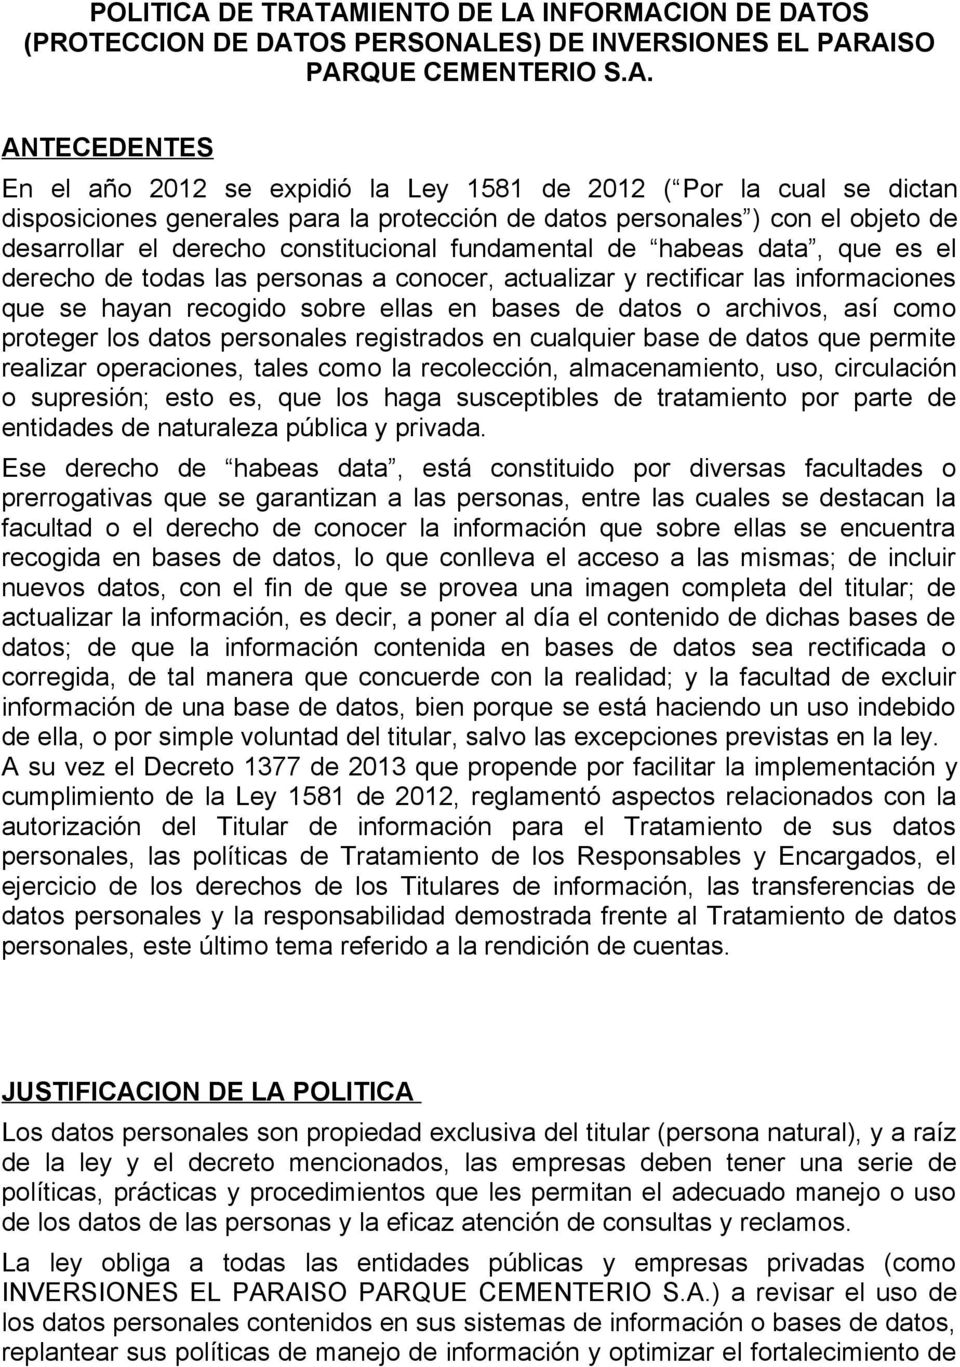 AMIENTO DE LA INFORMACION DE DATOS (PROTECCION DE DATOS PERSONALES) DE INVERSIONES EL PARAISO PARQUE CEMENTERIO S.A. ANTECEDENTES En el año 2012 se expidió la Ley 1581 de 2012 ( Por la cual se dictan